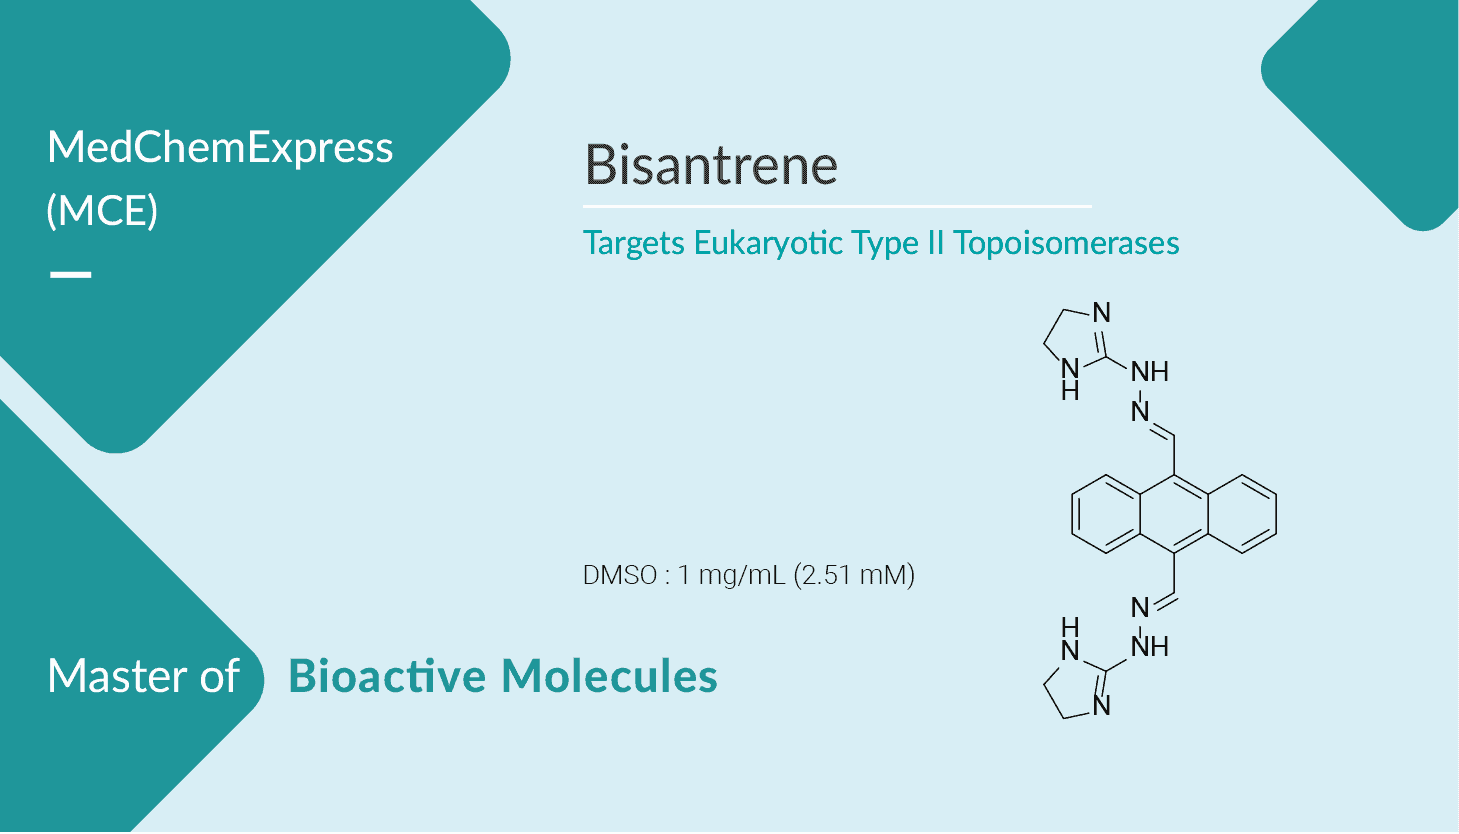 Bisantrene an Antitumor Drug 2022 0507 - Bisantrene, an Antitumor Drug, Targets Eukaryotic Type II Topoisomerases